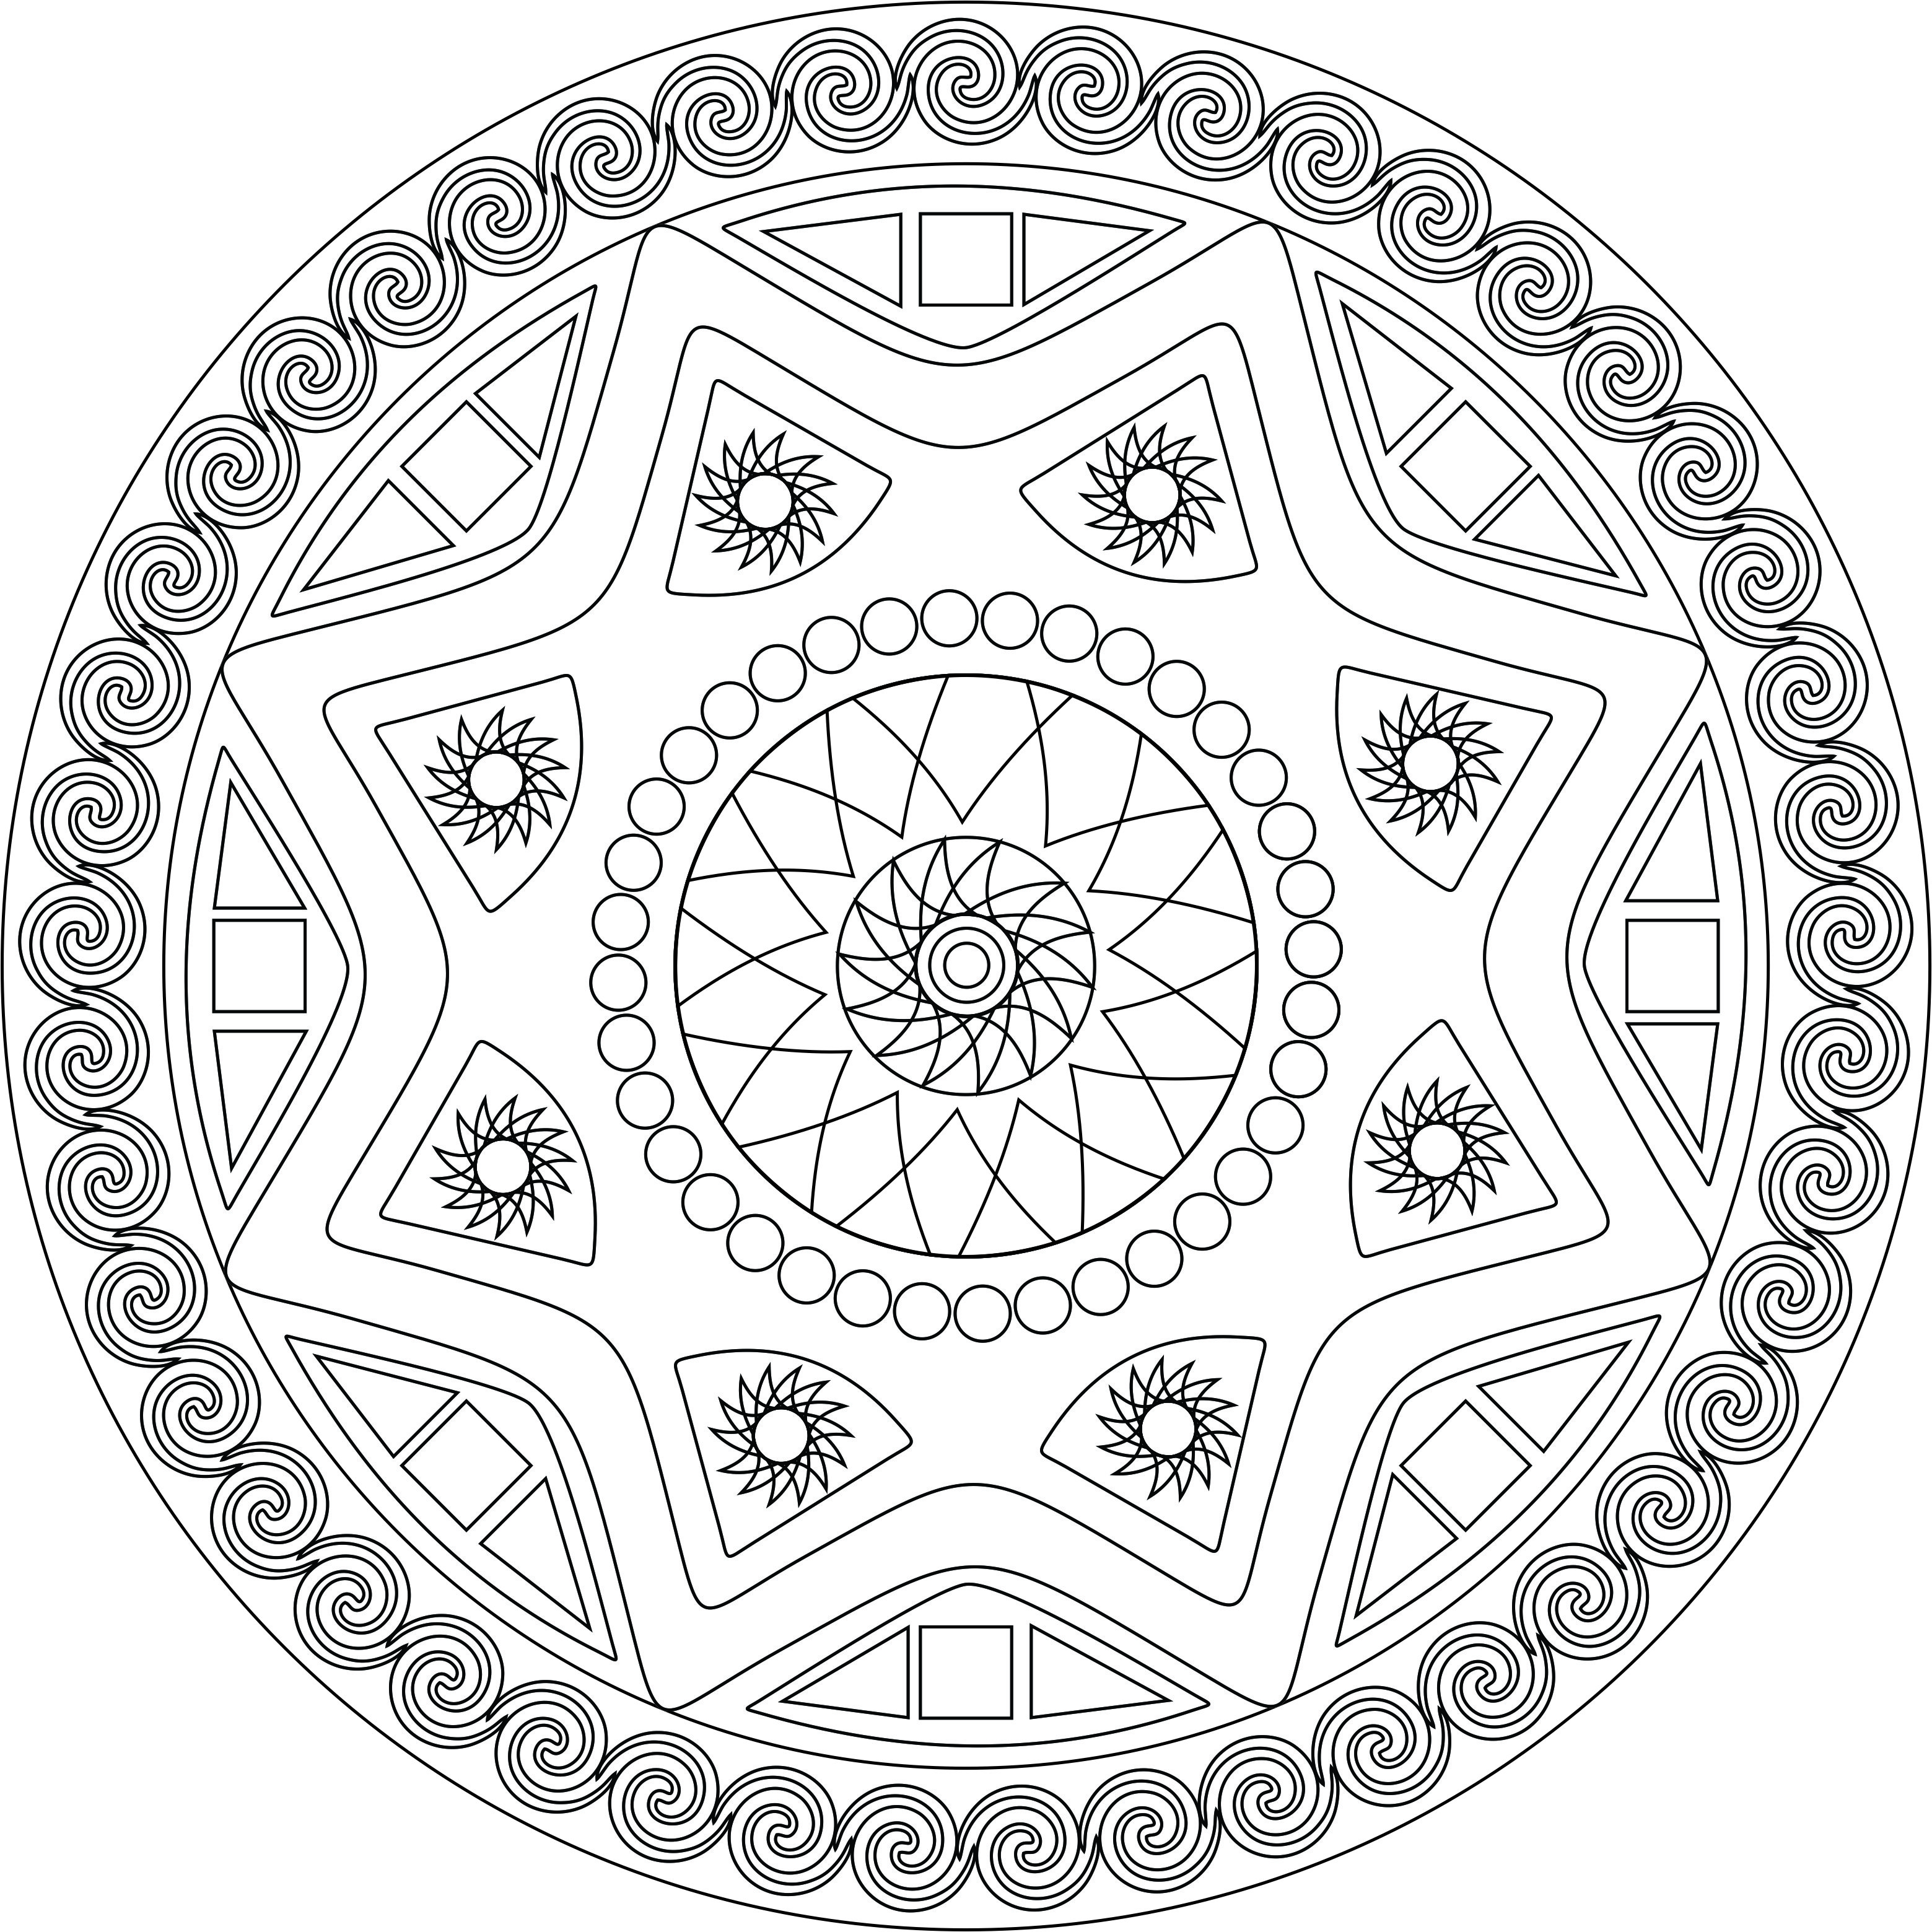 Mandalas Para Pintar: mandalas para colorear  Mandala coloring pages,  Mandala, Mandala coloring